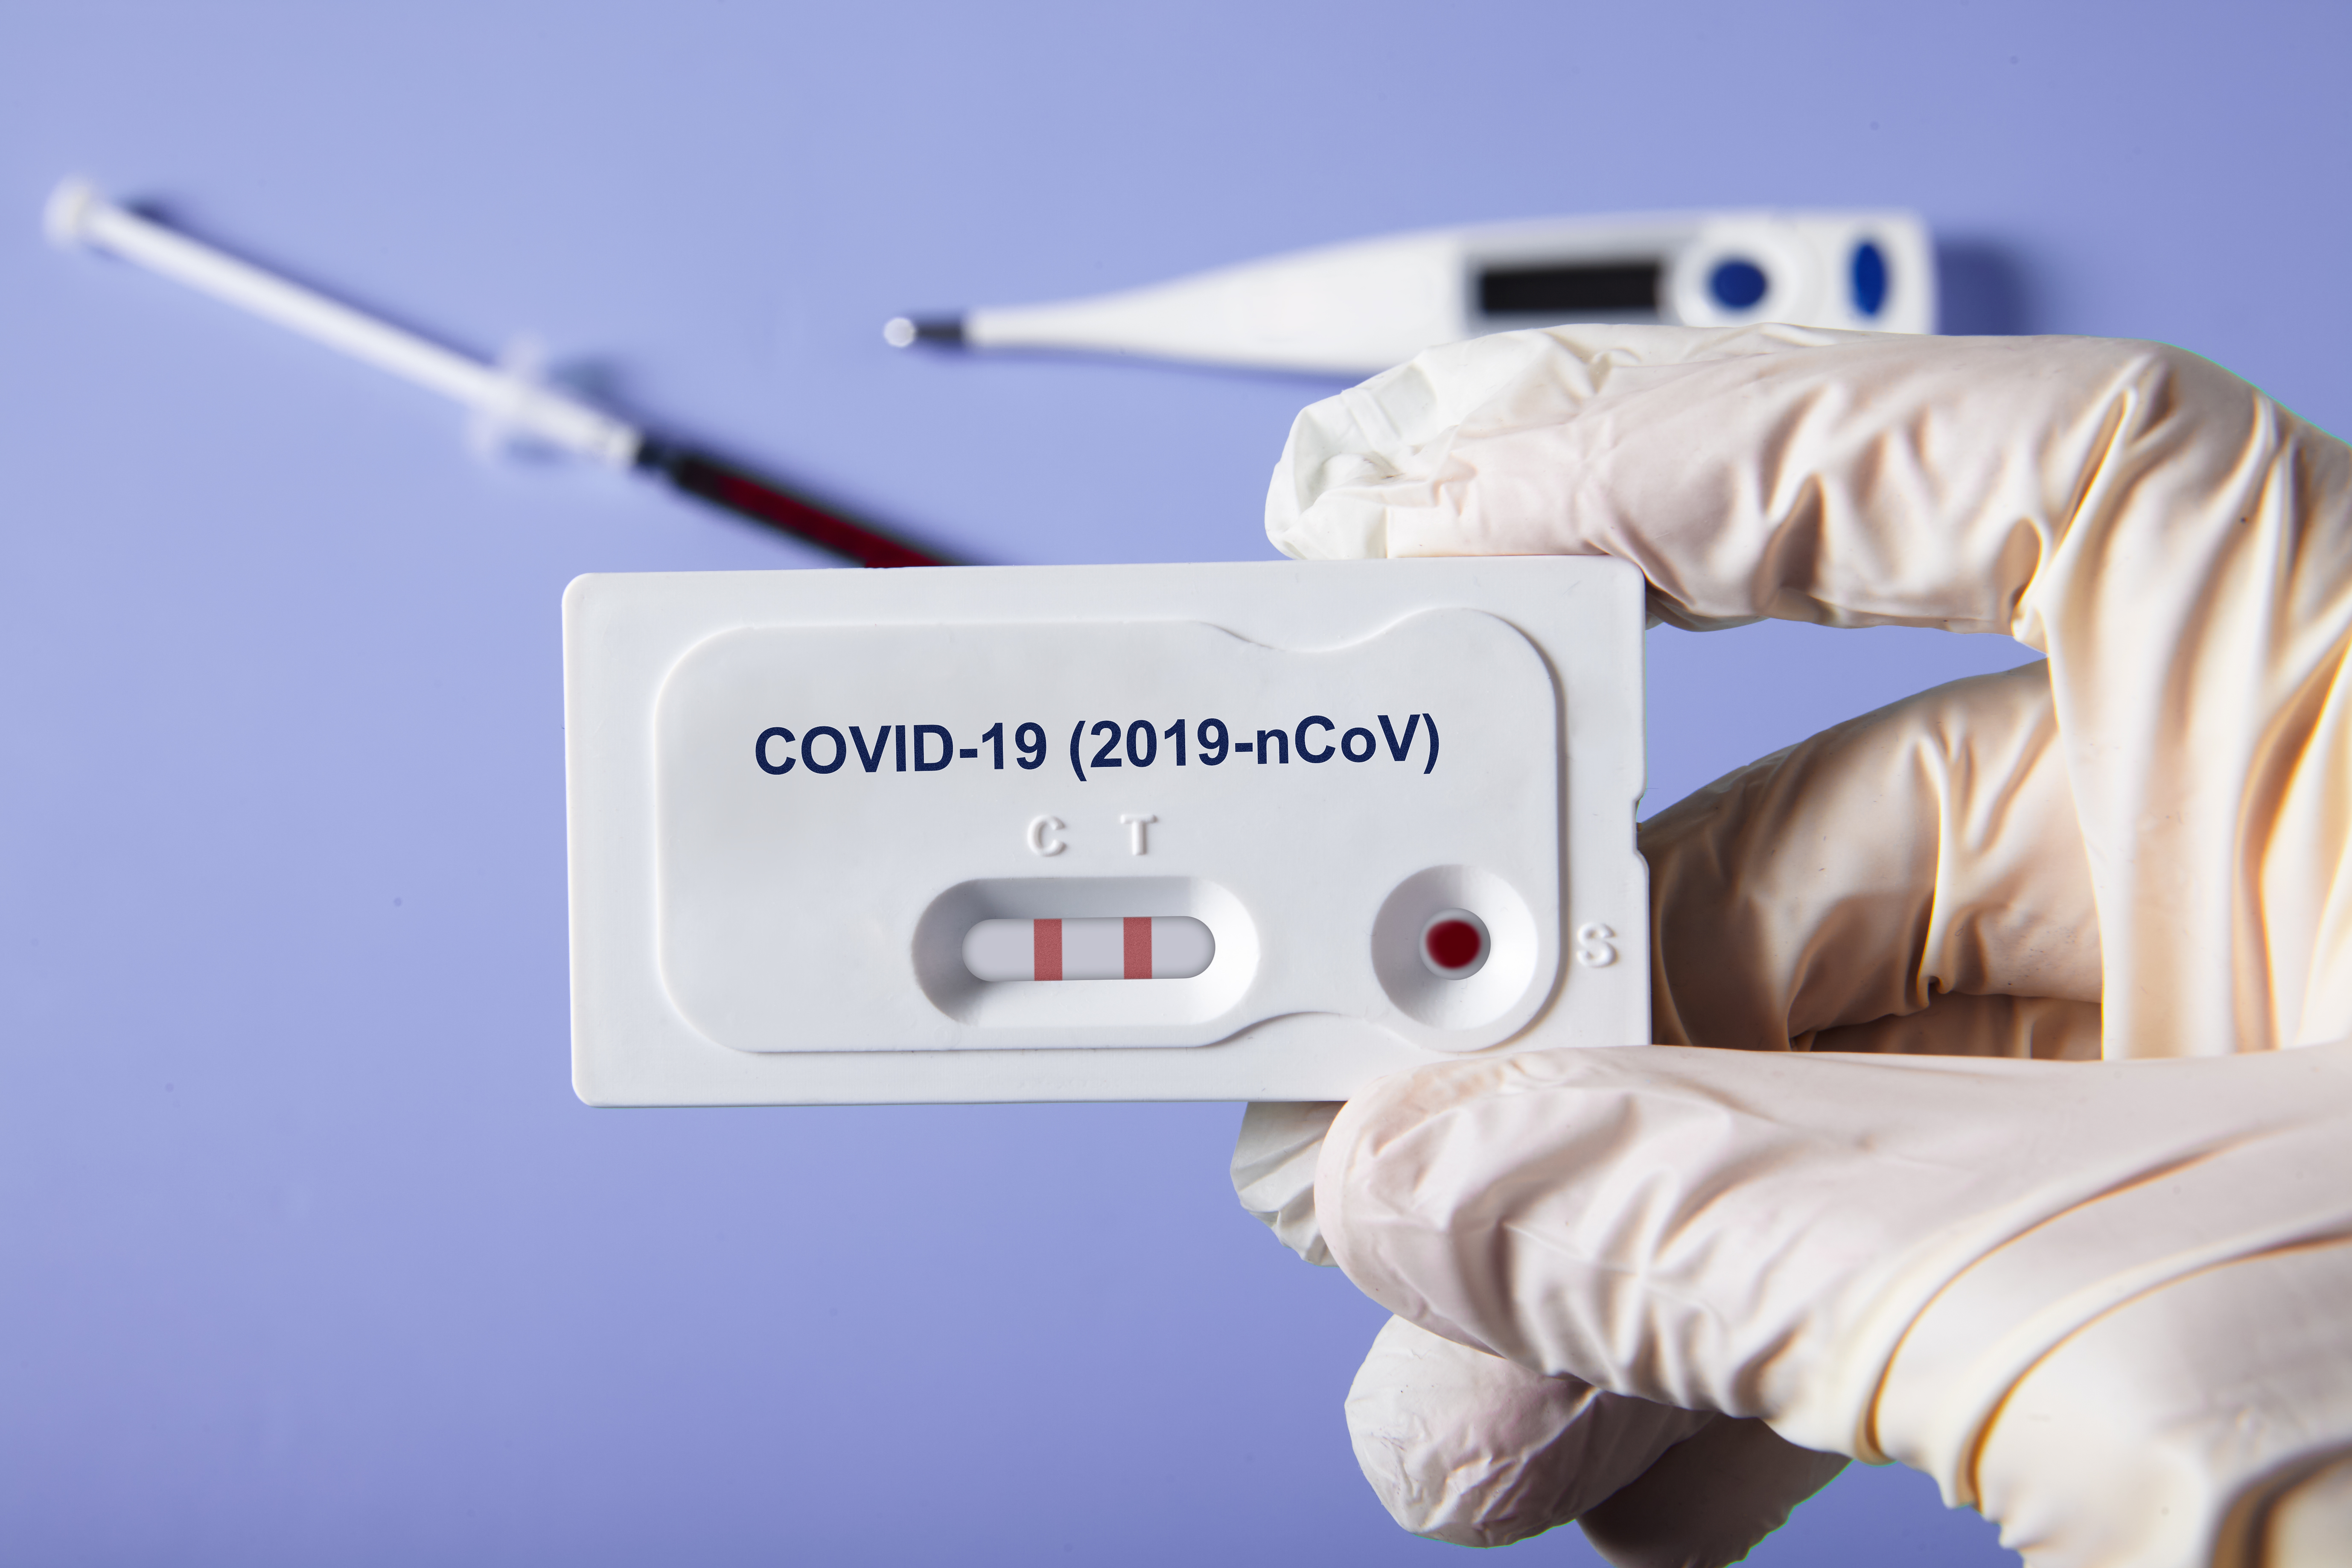     5 271 nouveaux cas : la propagation du Covid continue à ralentir

